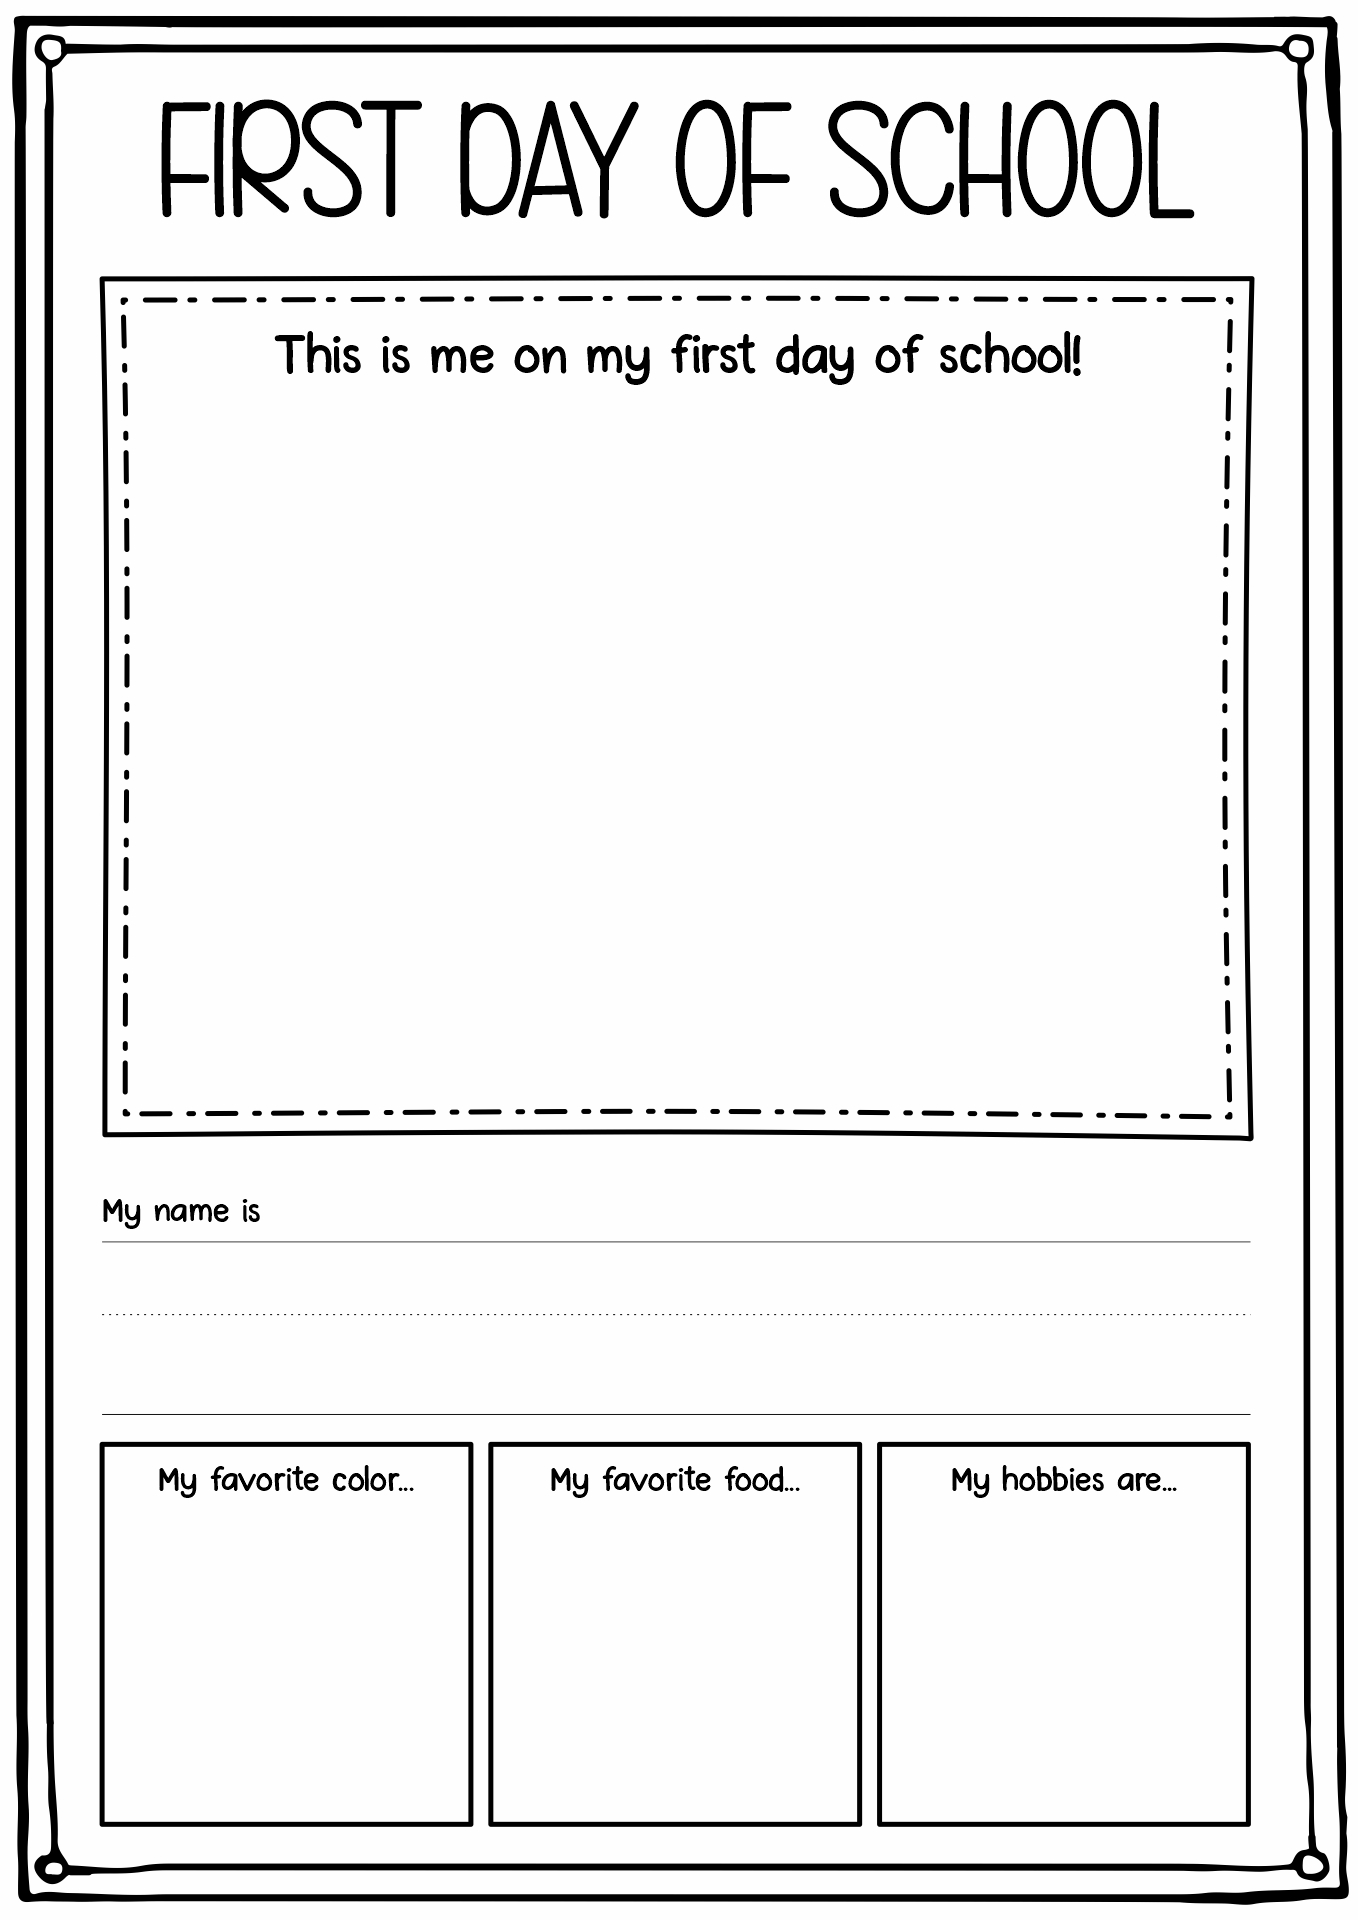 First Day of School Activity Kindergarten Image